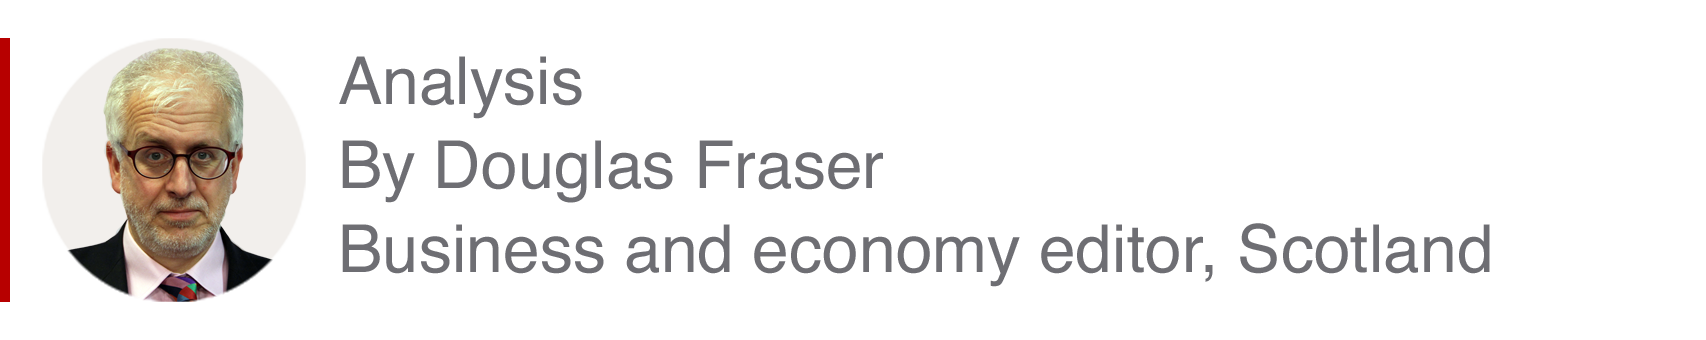 Analysis box by Douglas Fraser, business and eco<em></em>nomy editor, Scotland